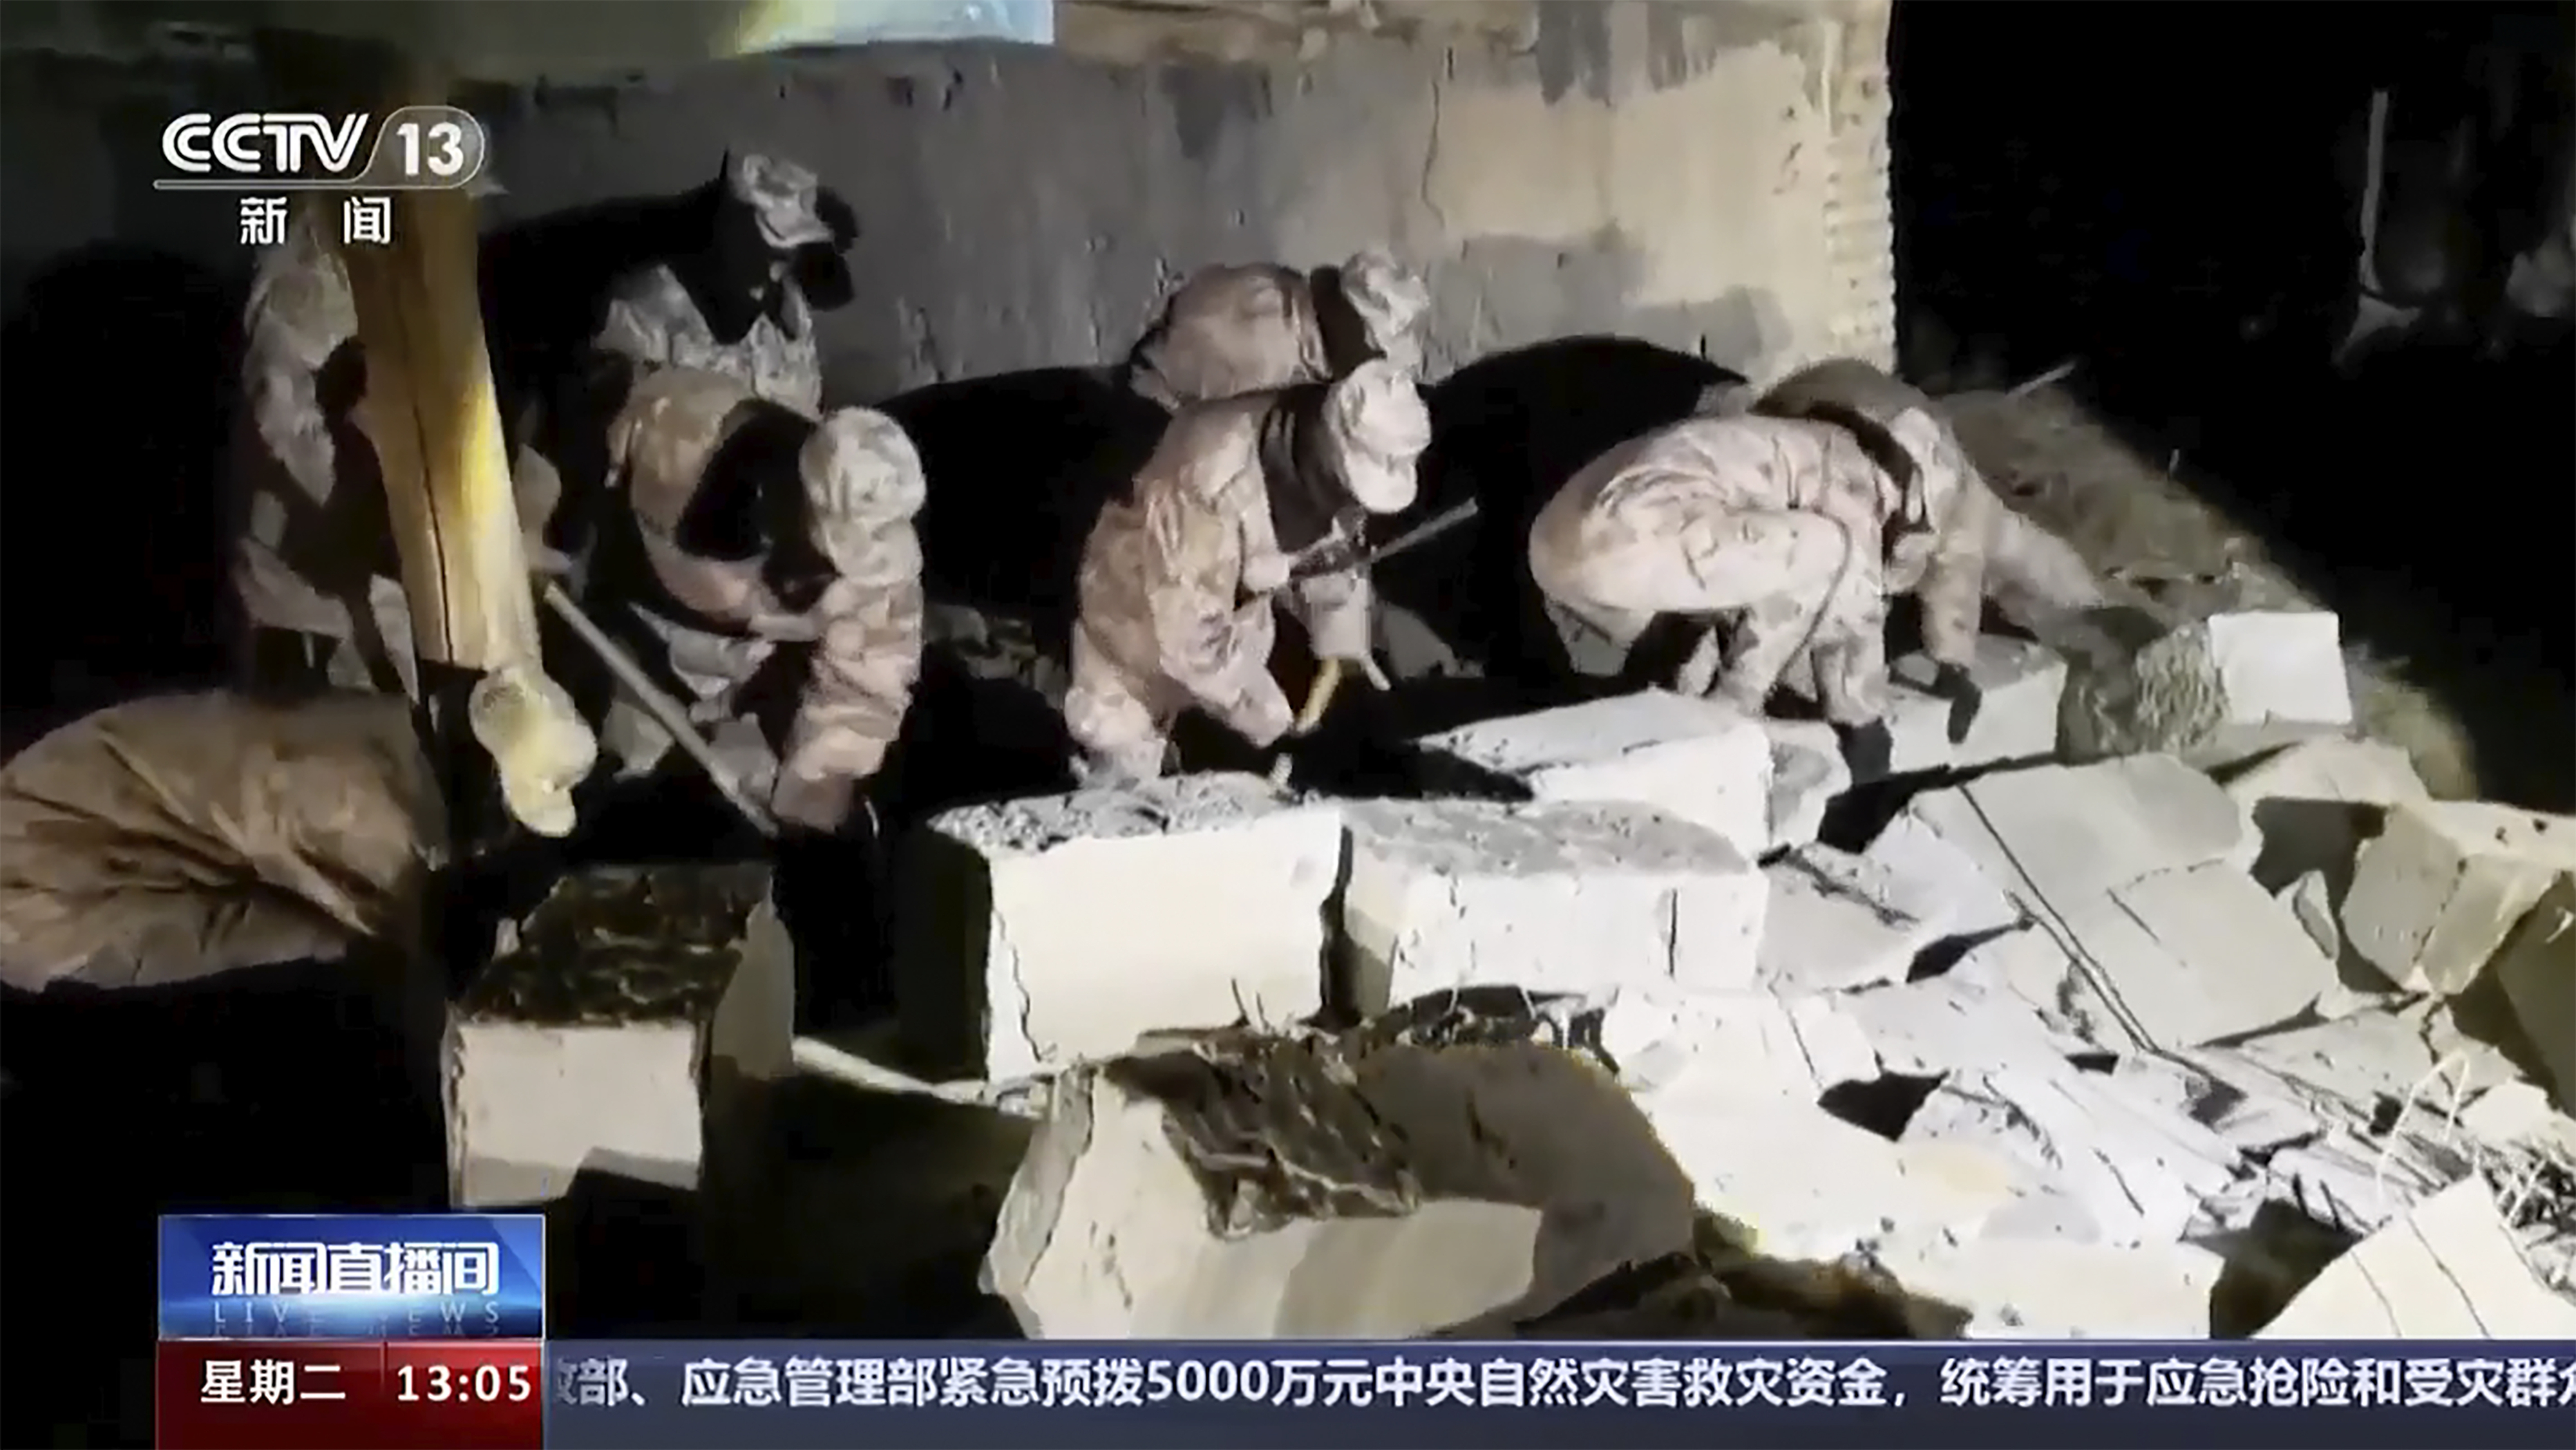 23일 규모 7.1의 강진이 덮친 중국 북서부 신장 위구르 자치구 악수현에 군인들이 투입돼 지진 잔해를 치우는 모습이 중국 국영방송 CCTV를 통해 보도되고 있다. 이날 새벽 2시 9분쯤 일어난 강진으로 6명이 중경상을 입었다. 악수 CCTV·AP 뉴시스